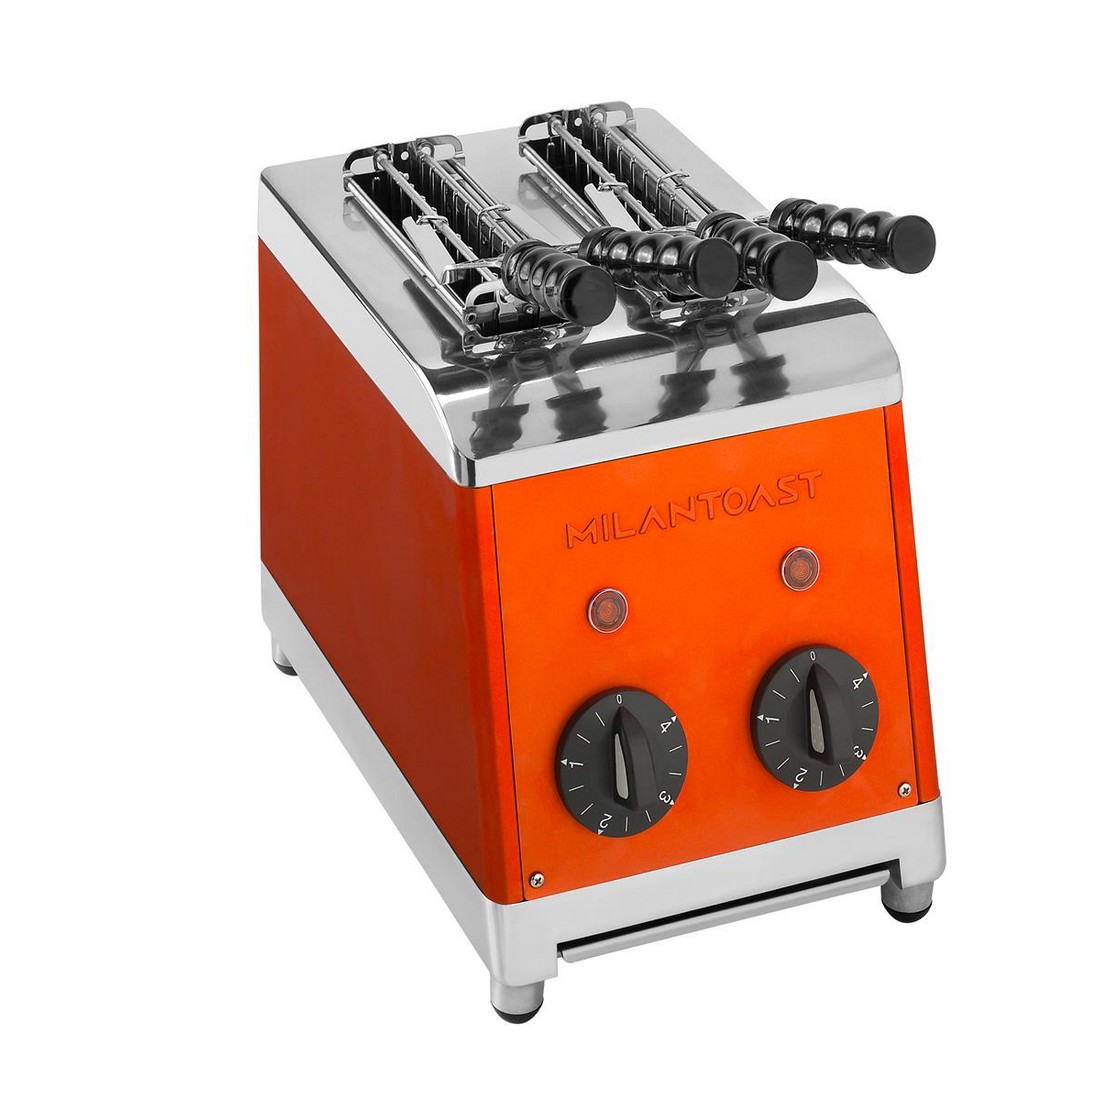 Toaster 2 tongs ORANGE 220-240v 50/60hz 1,37kw